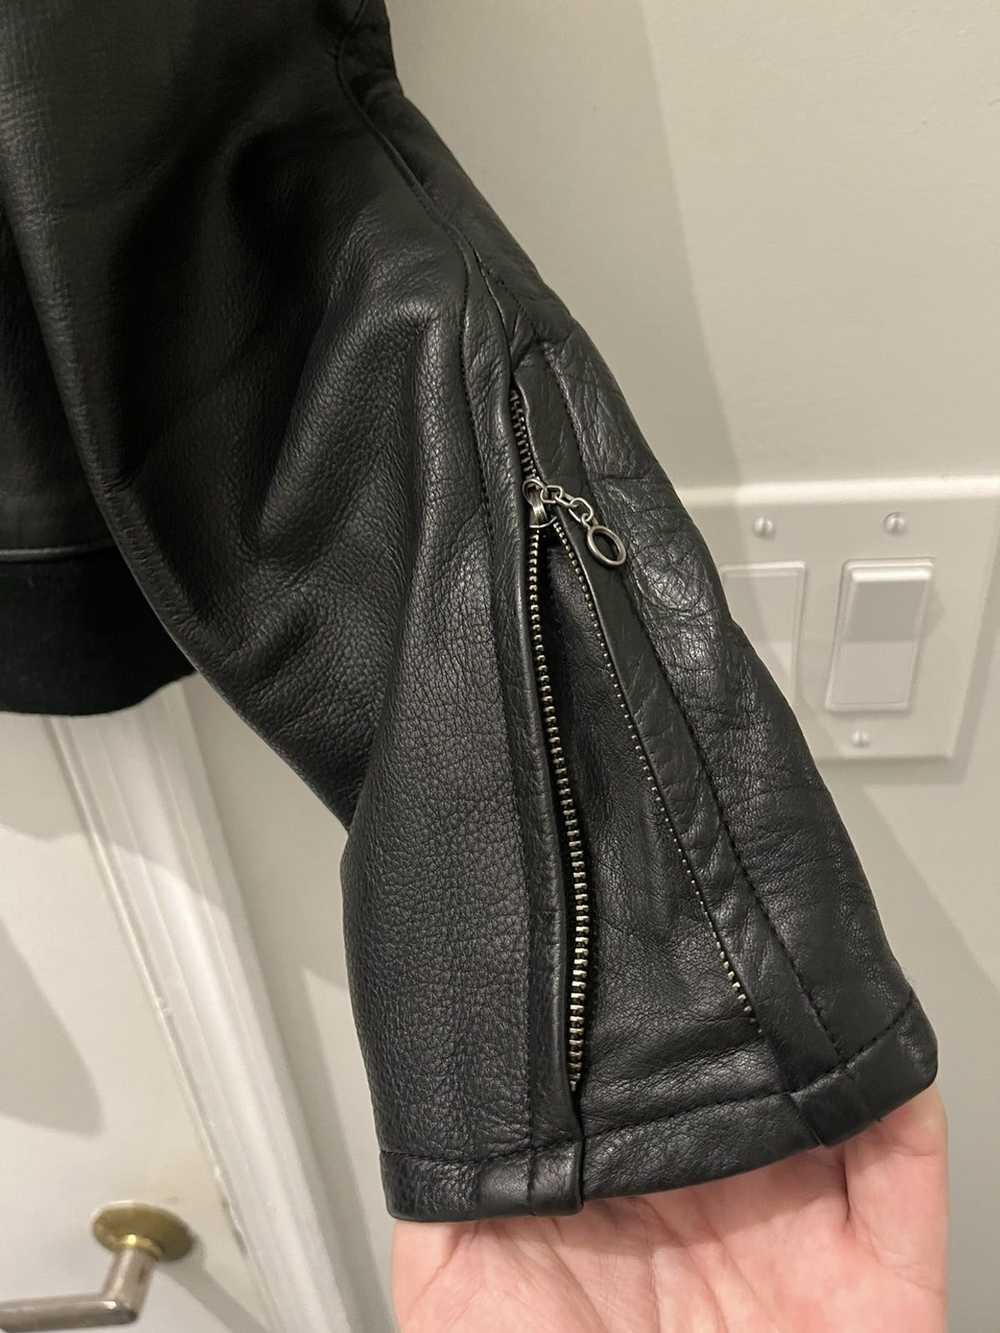 Japanese Brand × Leather Jacket Japanese Leather … - image 2